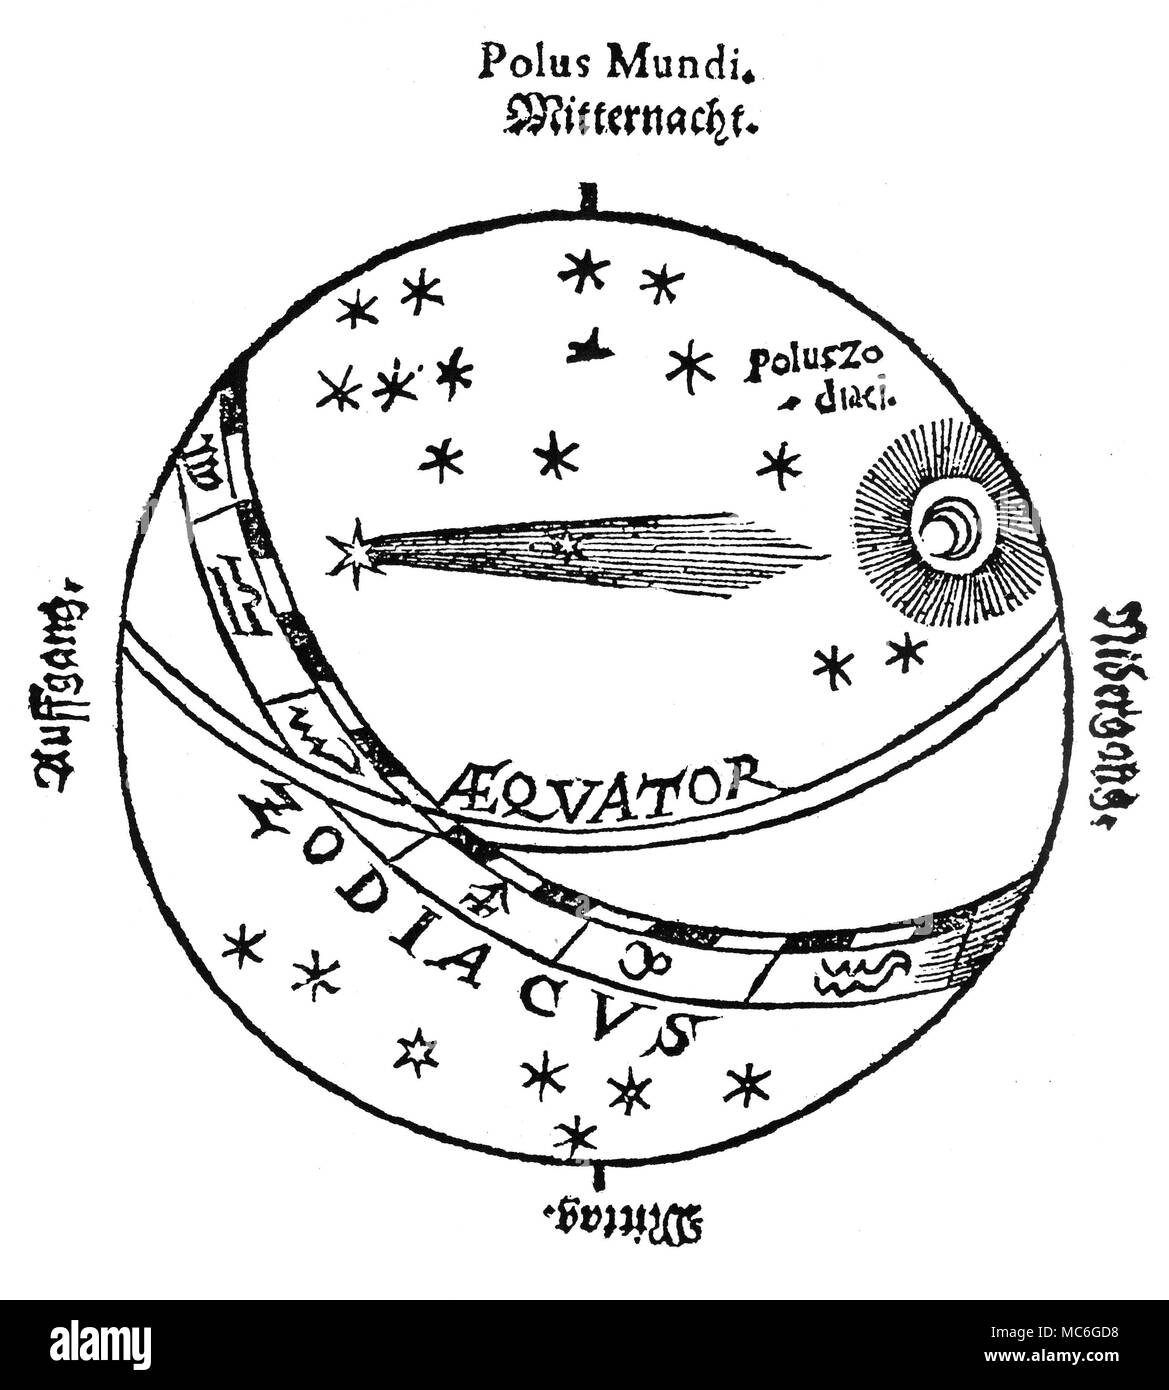 Astrologie - Kometen Holzschnitt aus der Titlepage der Cometen Historia. Das ist: kurtze Beschreibung der fuernembsten Cometen. Der Komet dargestellt ist, dass von 1618. Die Sternzeichen, die Betonung in dieser Schnitt gegeben ist, war es wichtig, in den mittelalterlichen Kosmetologie, als Teil des Tierkreises, daraus einen Kometen entstanden sind (oder zum ersten Mal gesehen) war hielt seine prädiktive Bedeutung zu bestimmen. Stockfoto